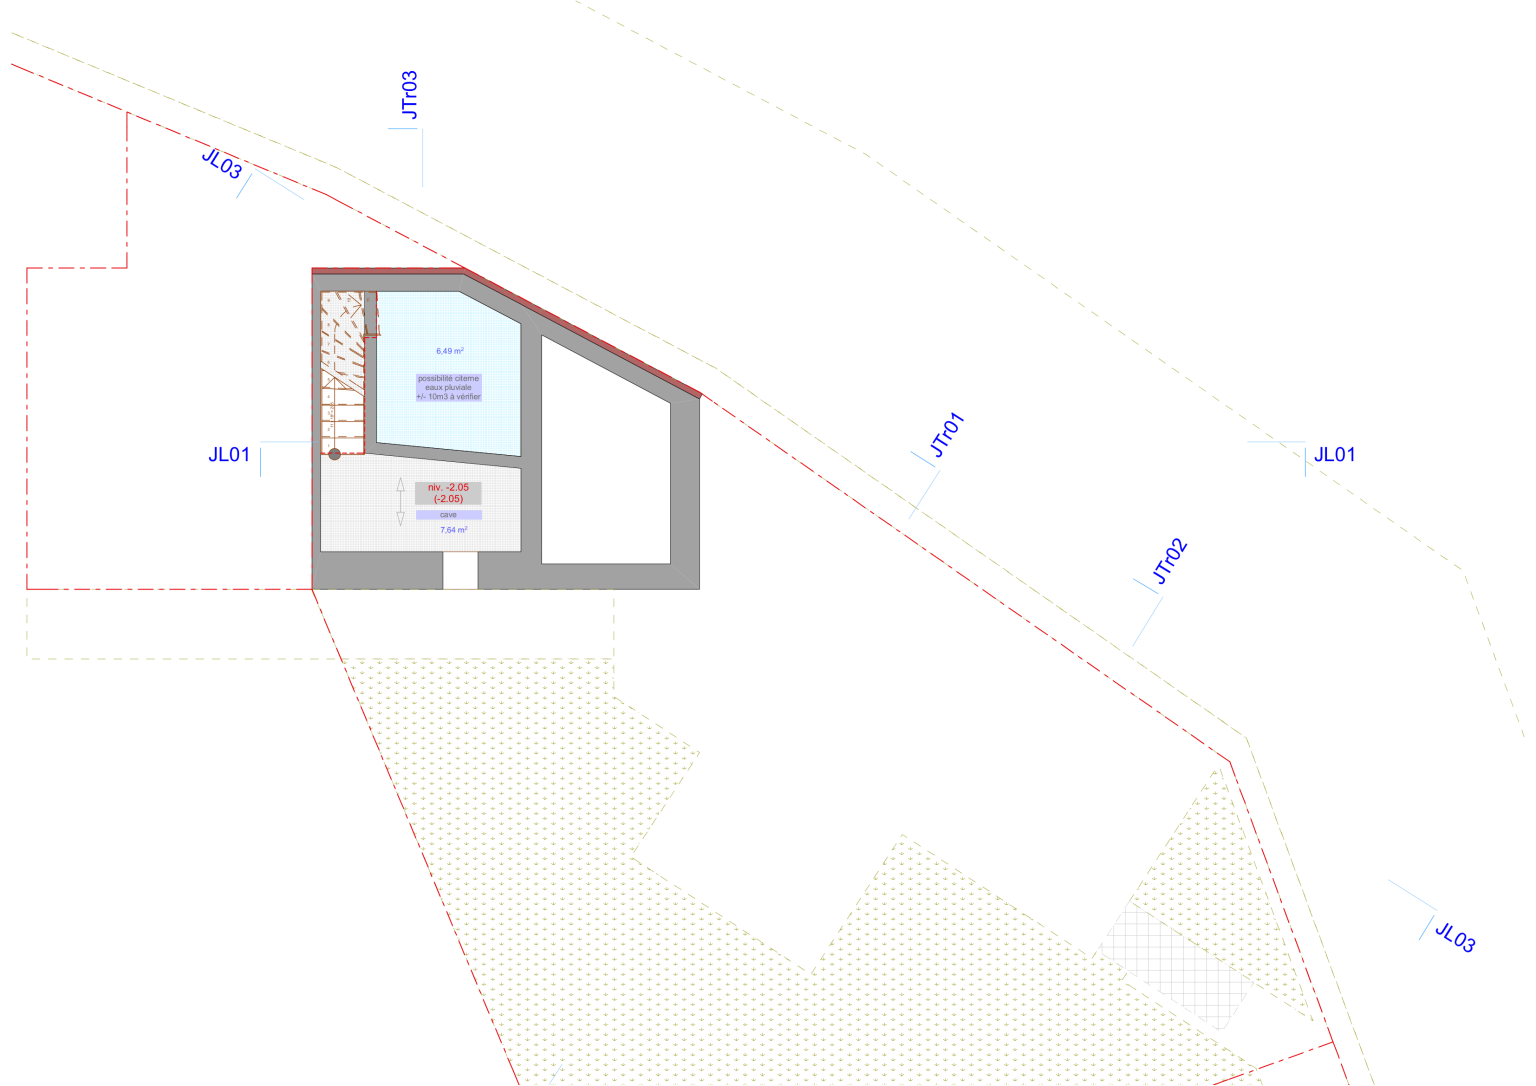 Plan d’architecte d'une maison